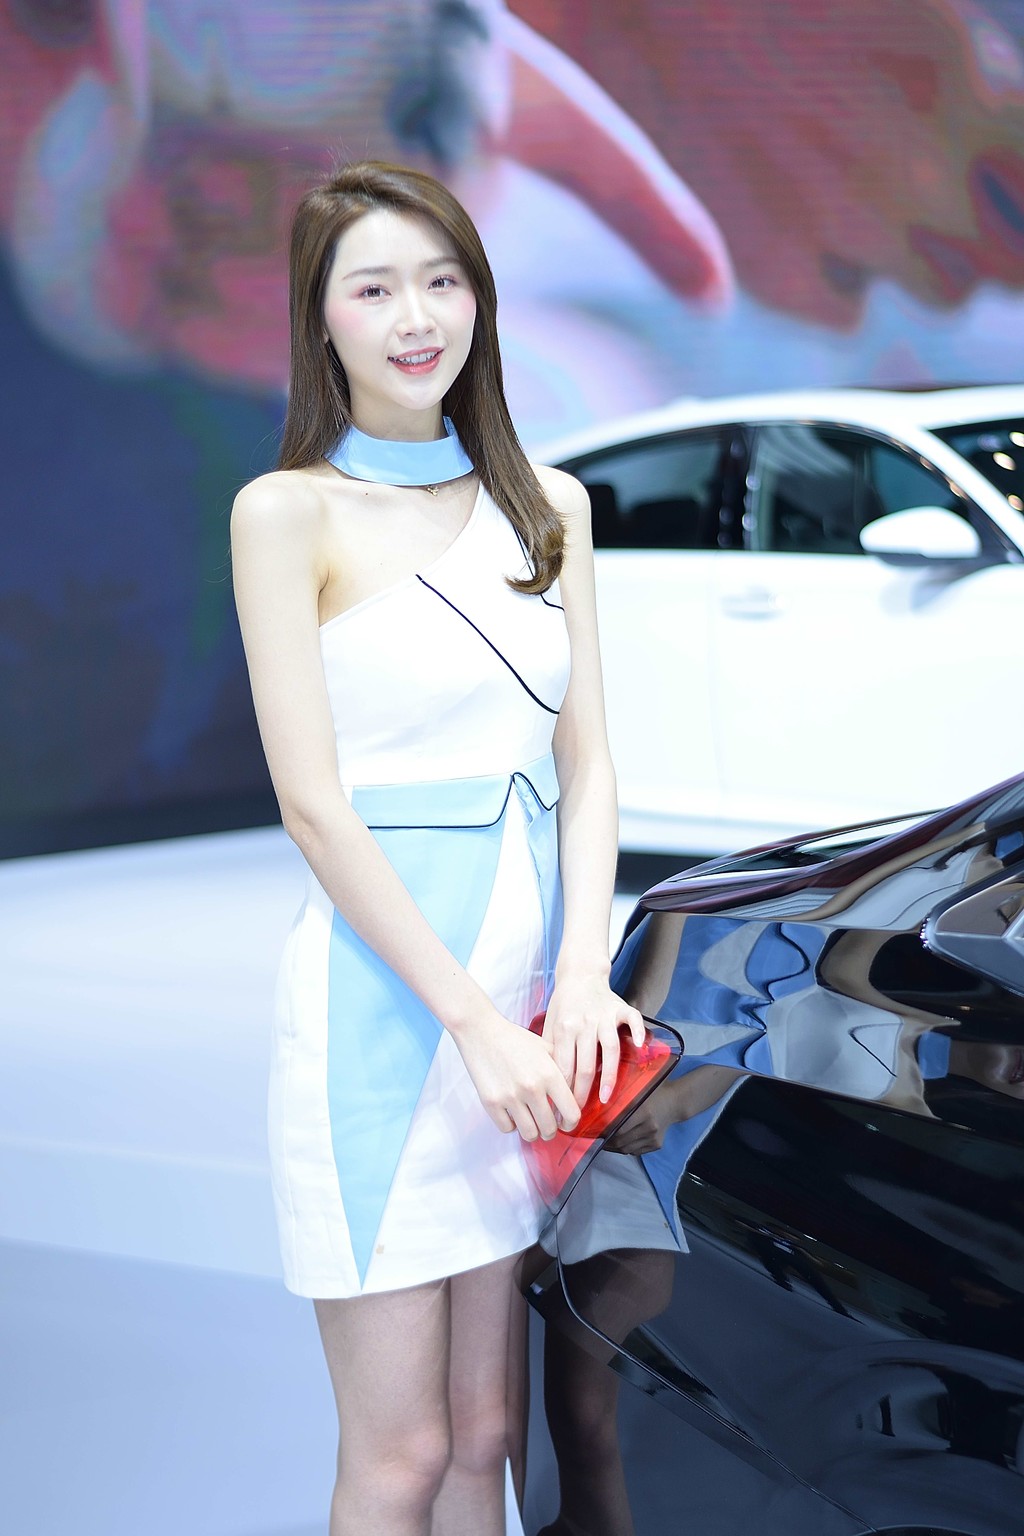 韩国美女车模迷人笑容自拍美女图片一套